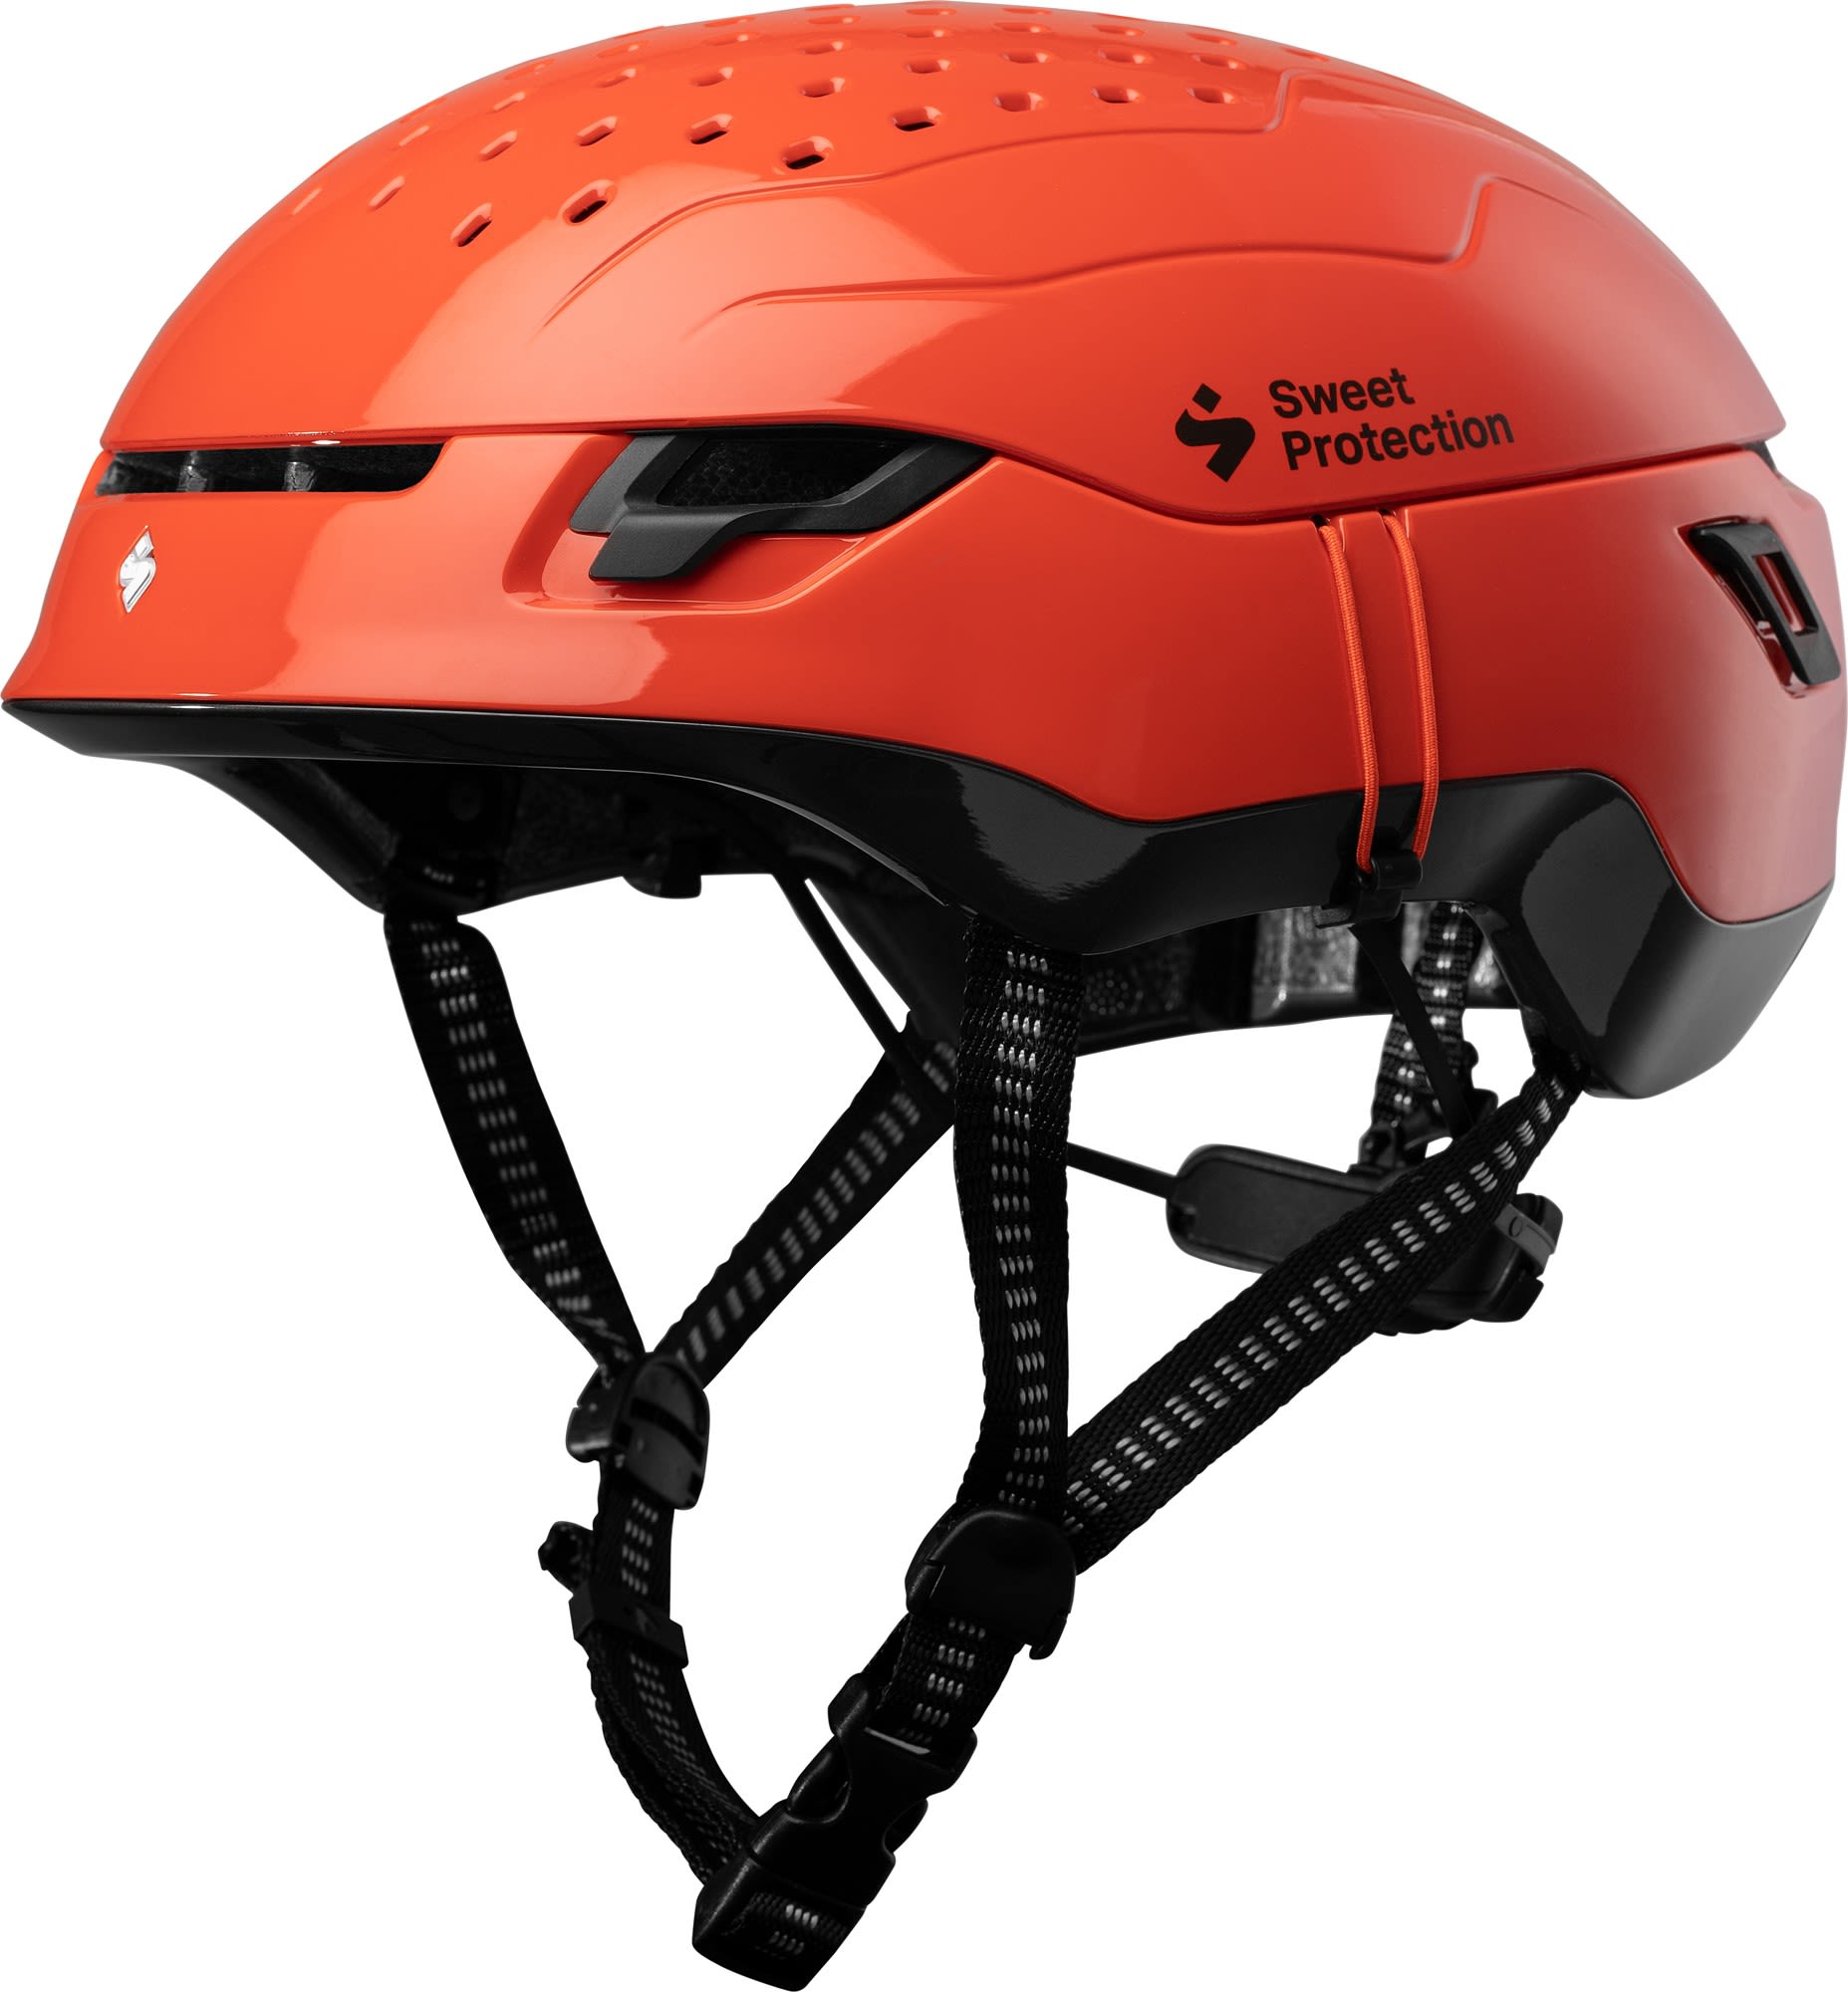 Leichter innovativer Bergsport Helm Dirt Black